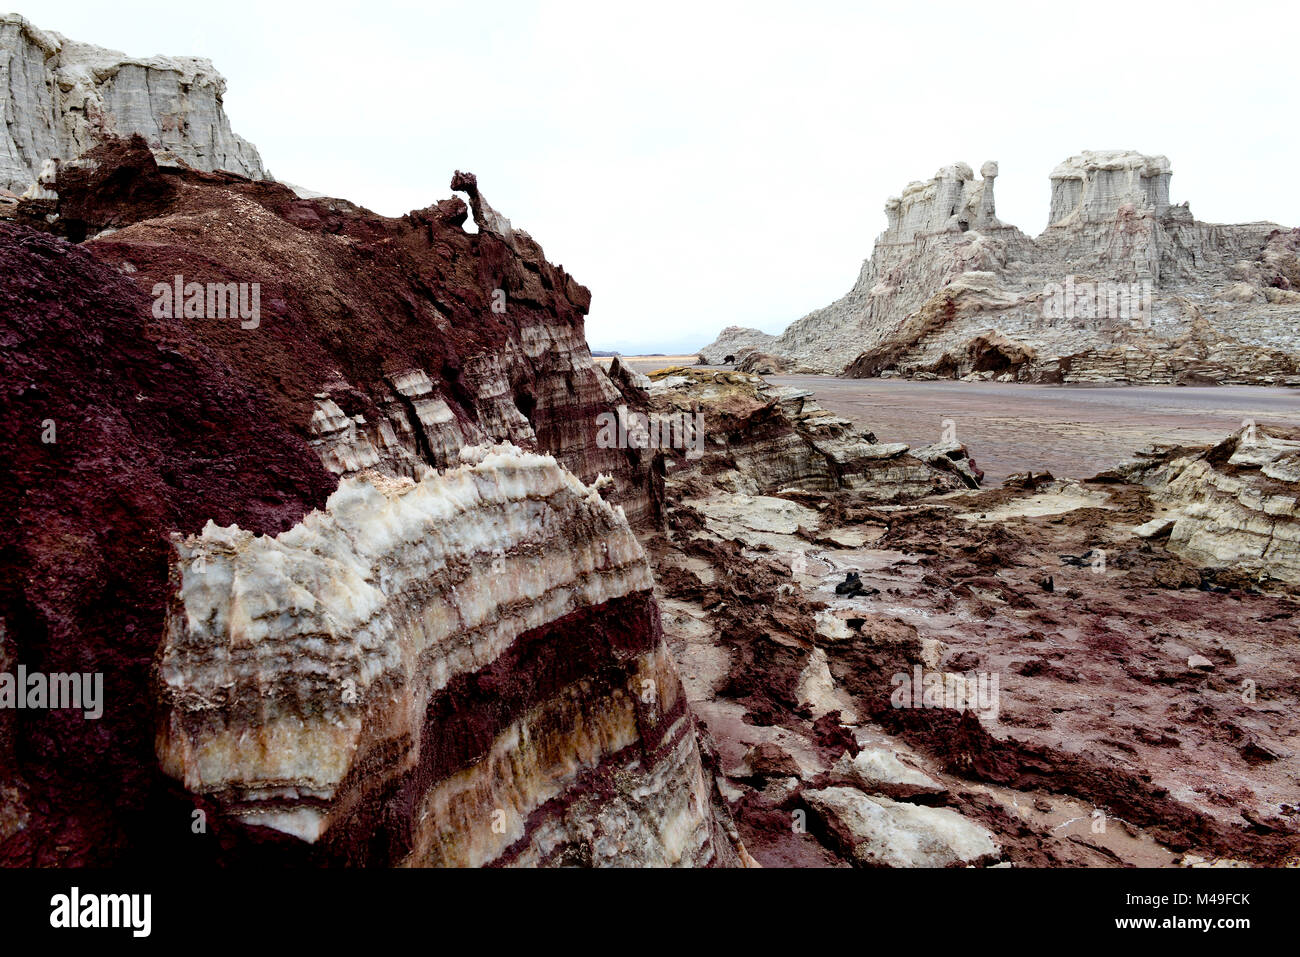 Formazioni causati da erosione di vento, dei depositi di sale, acqua e vapori solforoso in area di Dallol, Lago Assale, regione di Afar, Etiopia, Africa. Novembre 2014. Foto Stock